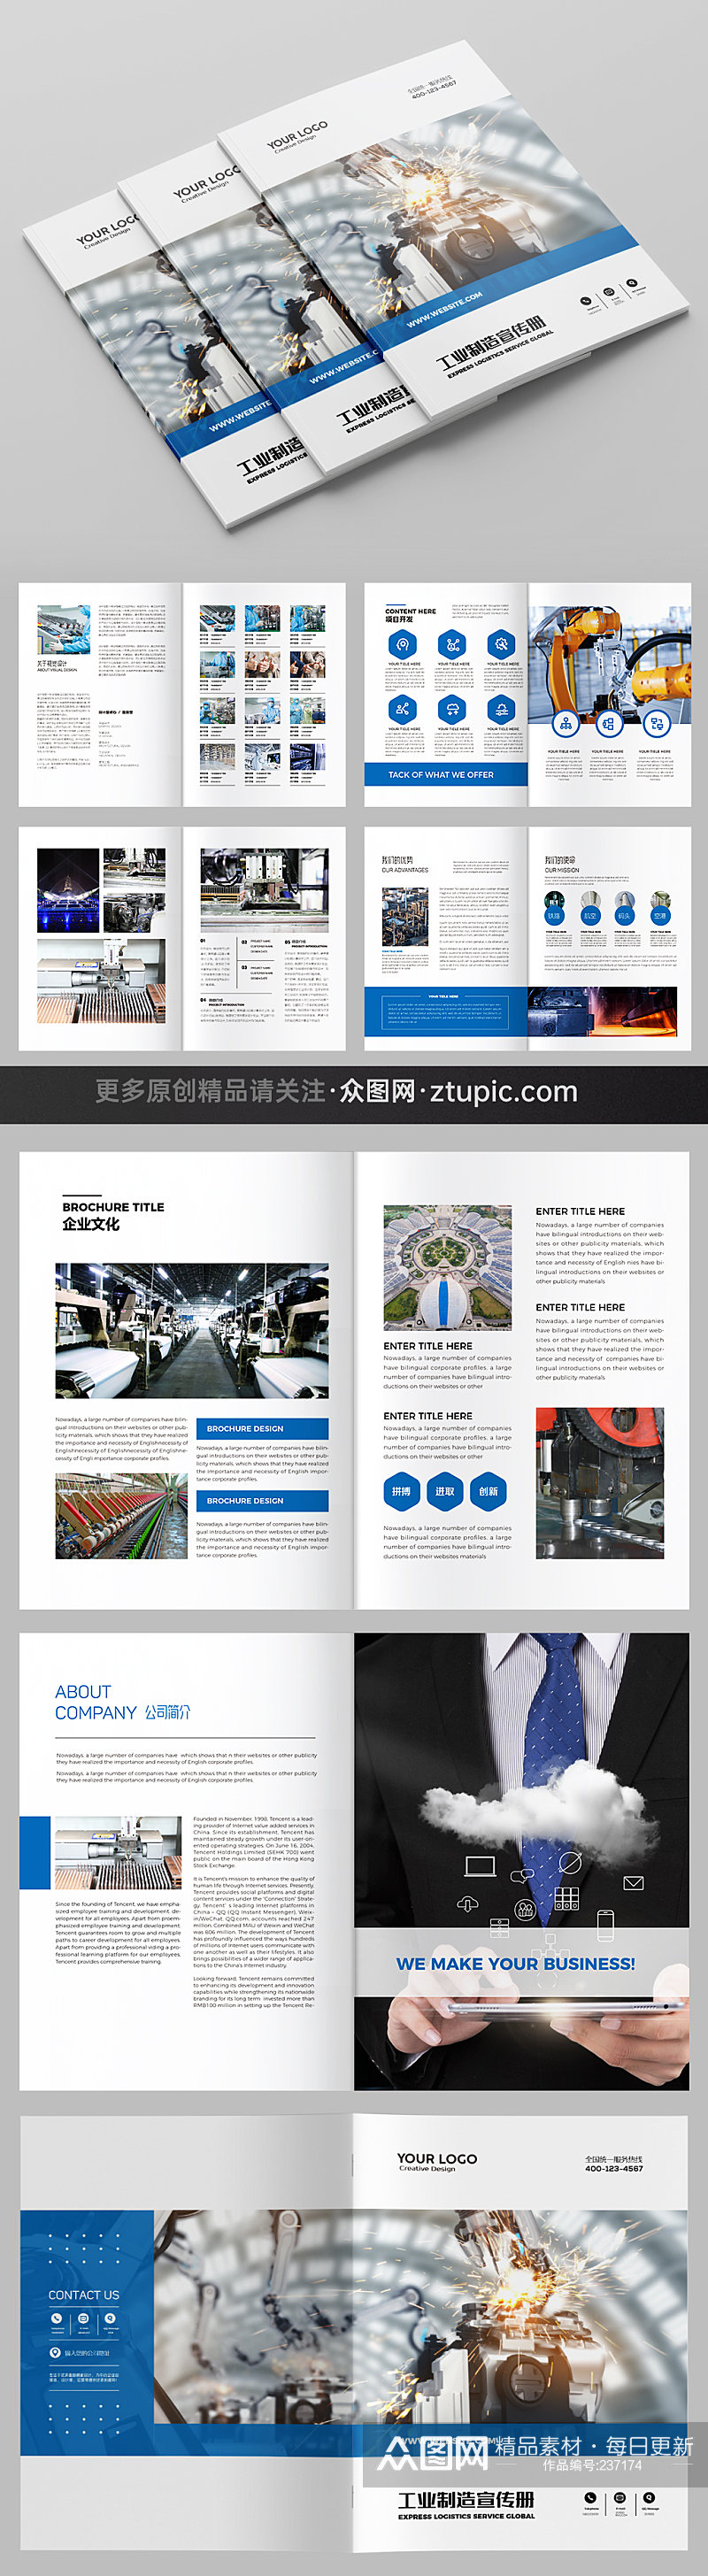 自动化工厂画册企业宣传册  企业宣传册欣赏素材